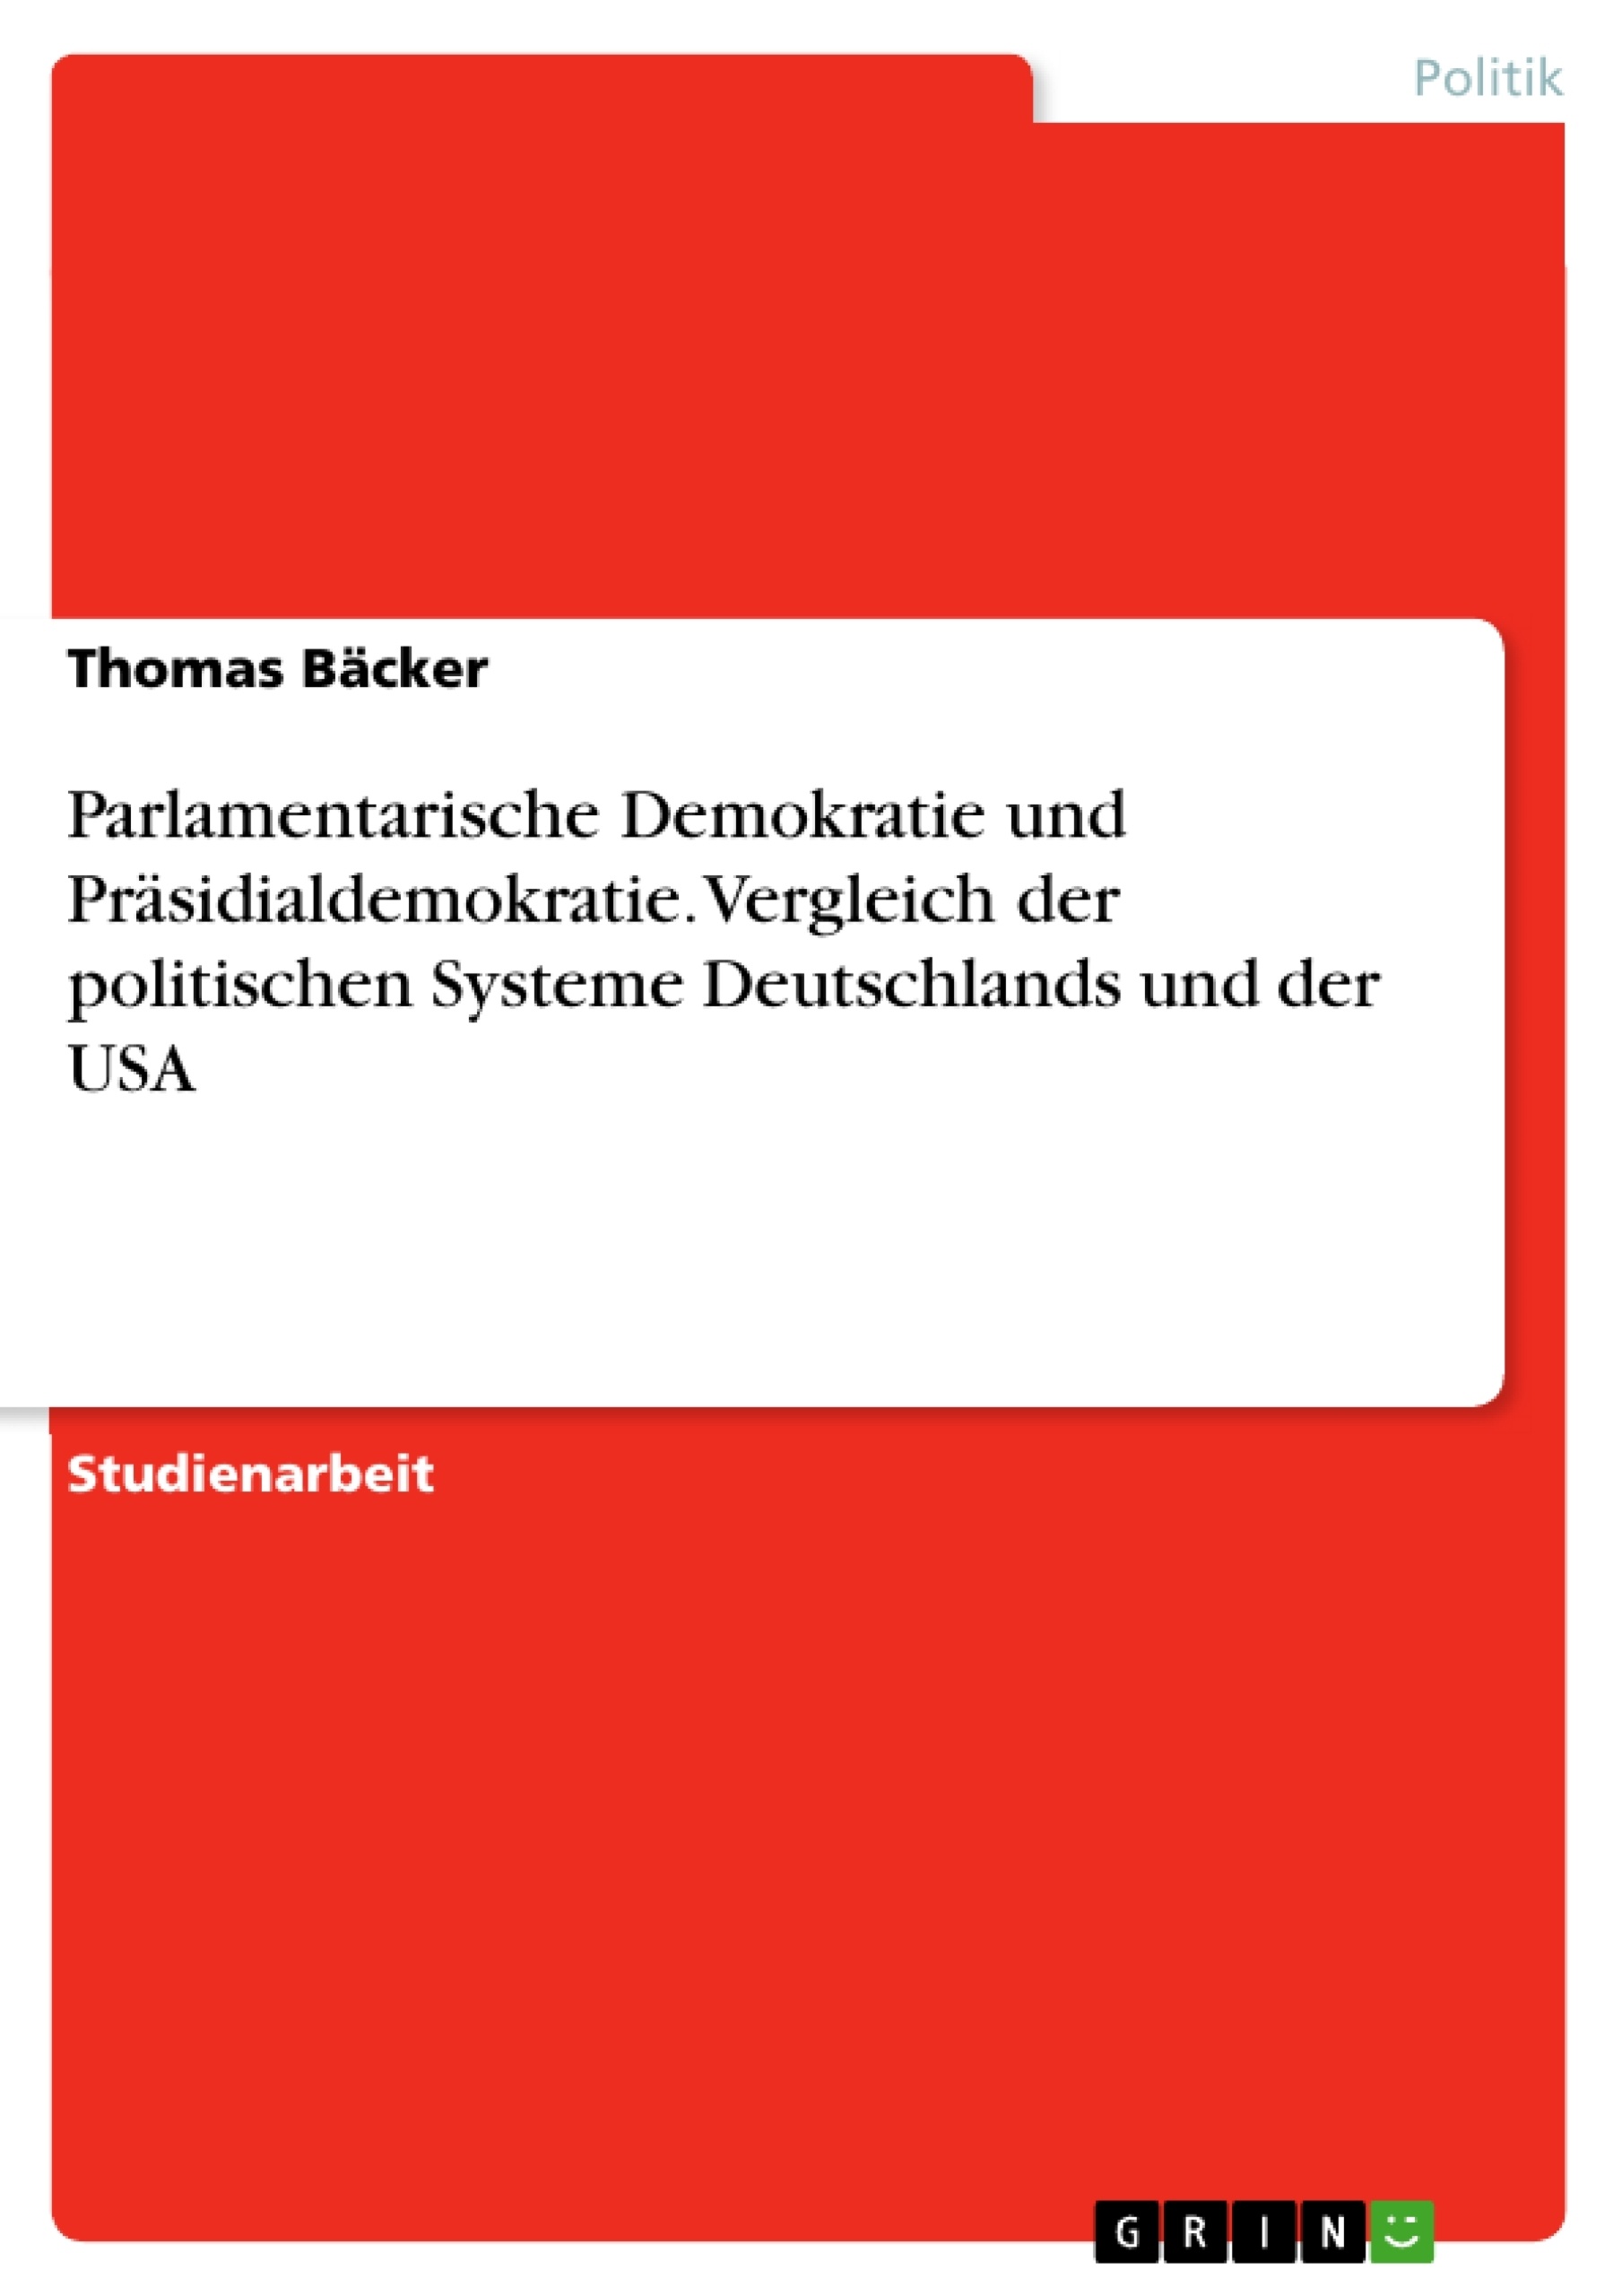 Titre: Parlamentarische Demokratie und Präsidialdemokratie. Vergleich der politischen Systeme Deutschlands und der USA